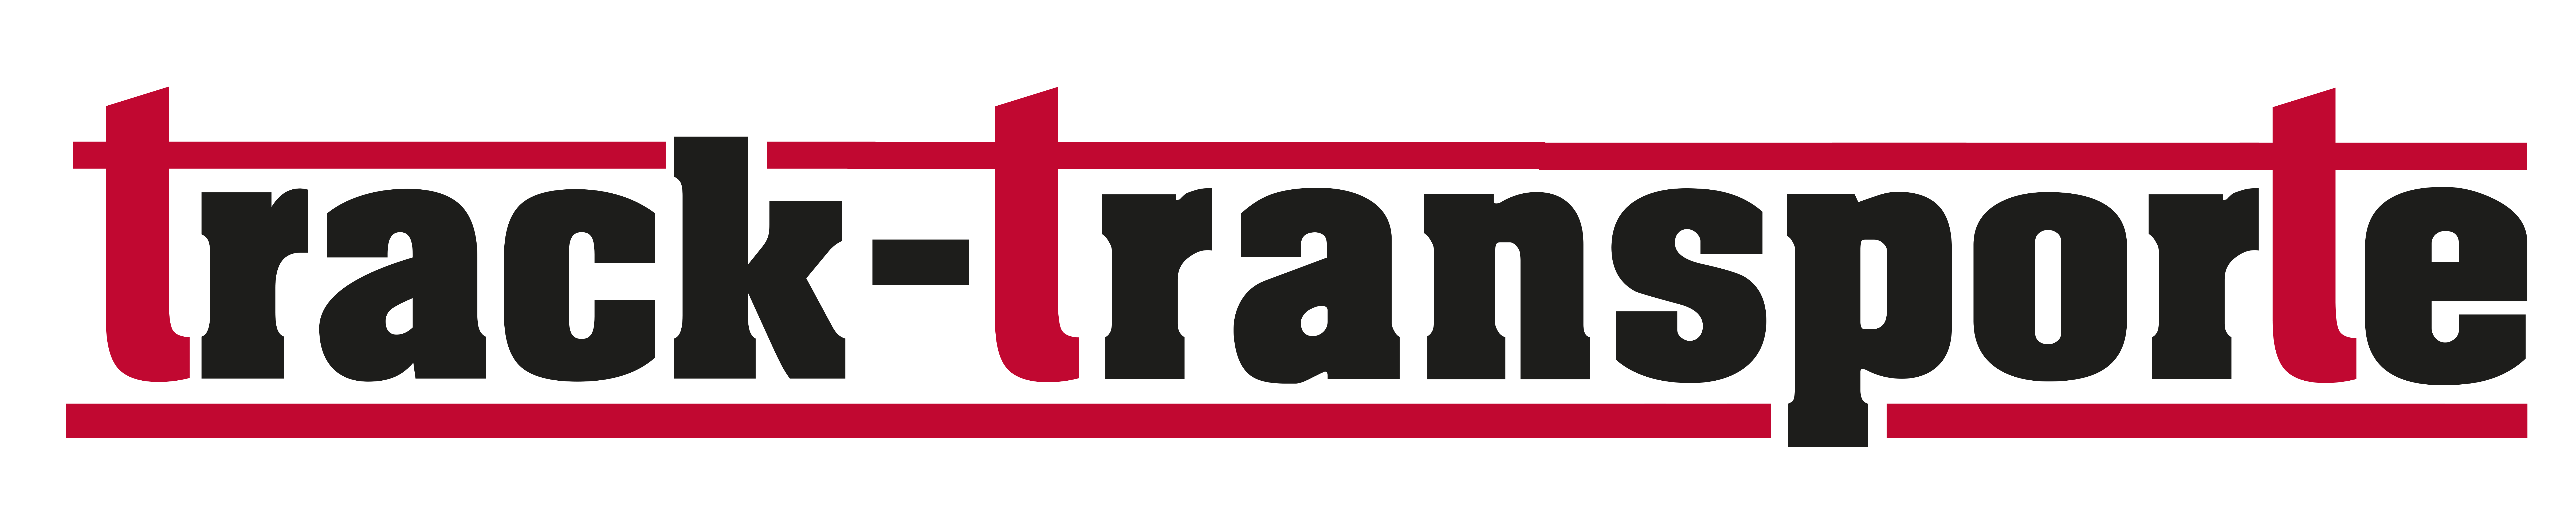 track-transporte logo aus Cottbus